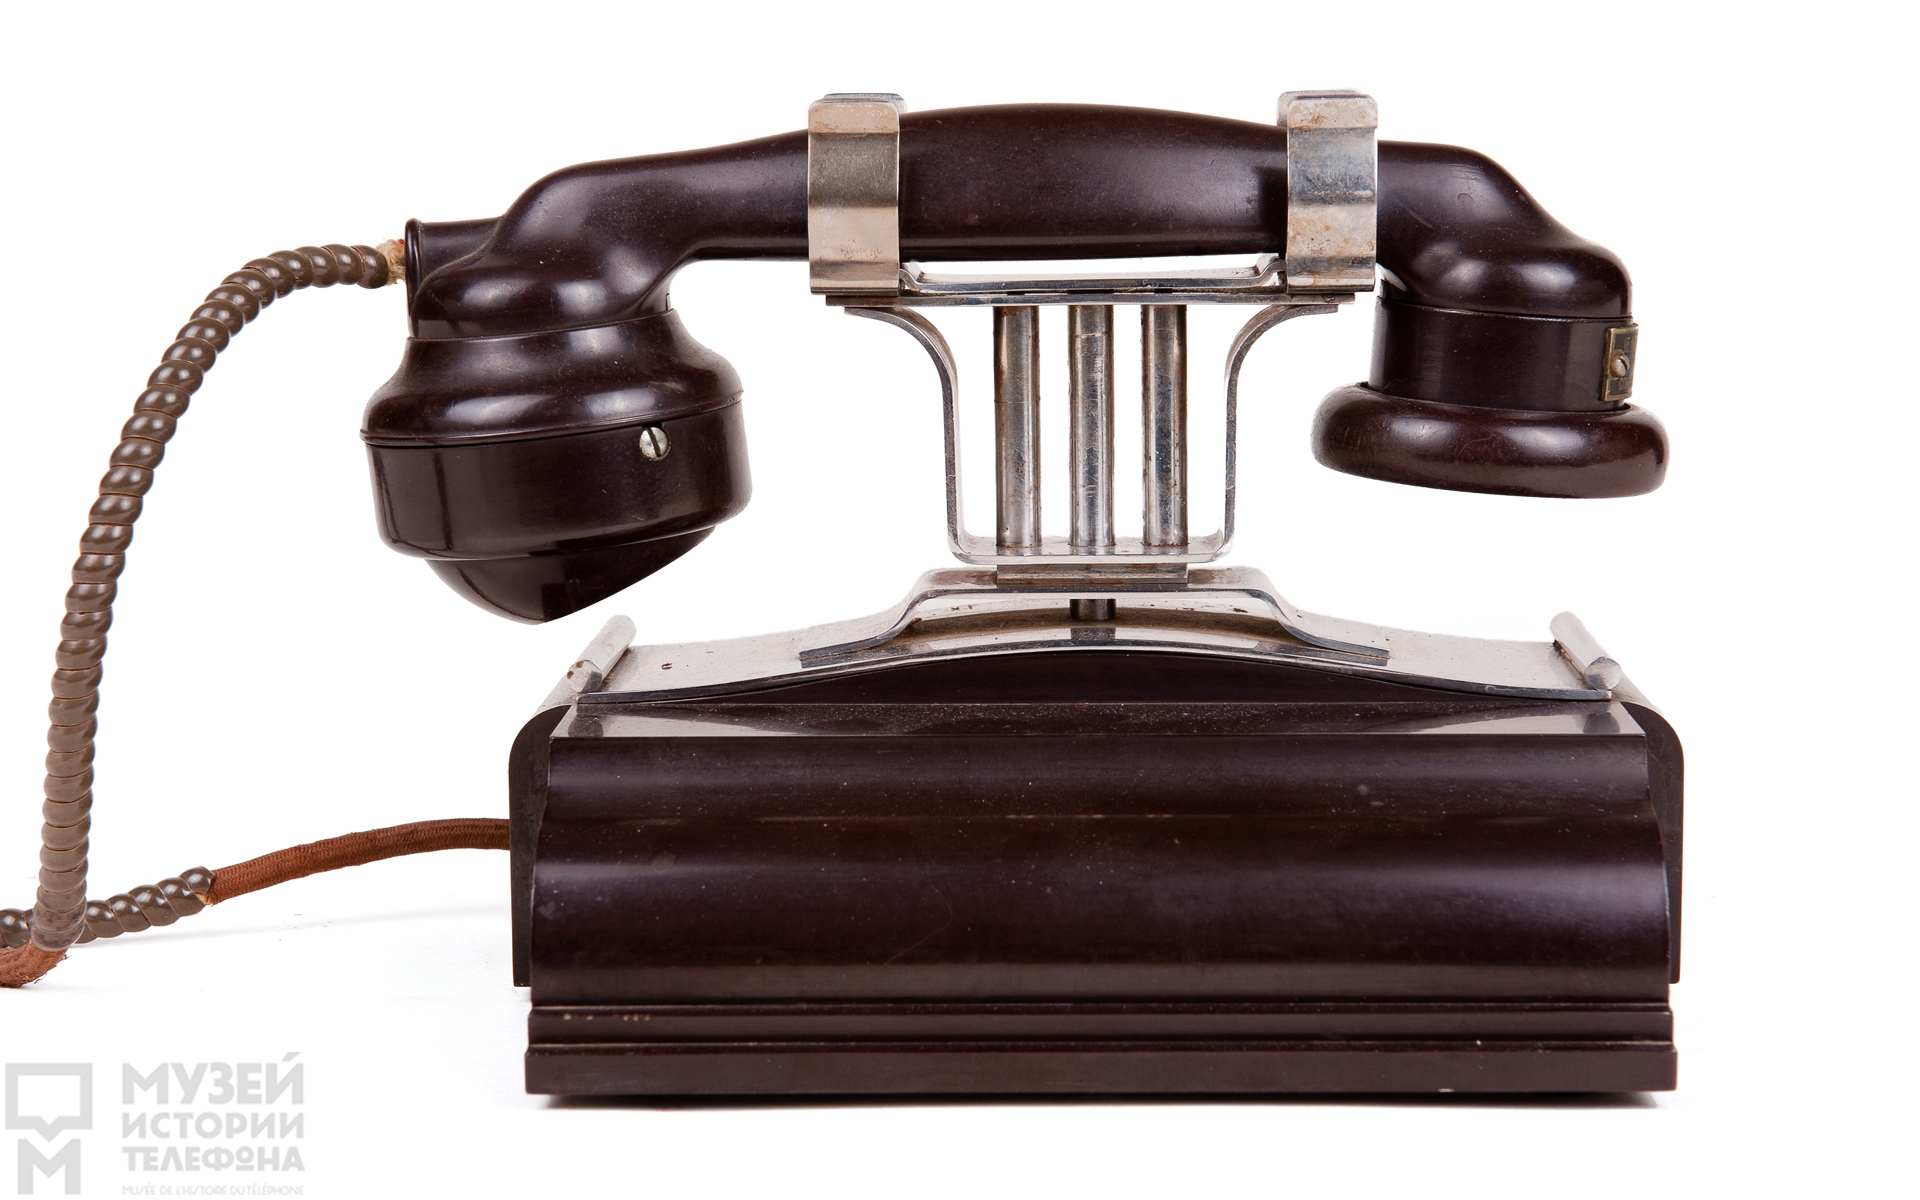 Каютный телефон прямого вызова в бакелитовом корпусе цвета темного шоколада, создан для круизного лайнера "Нормандия"